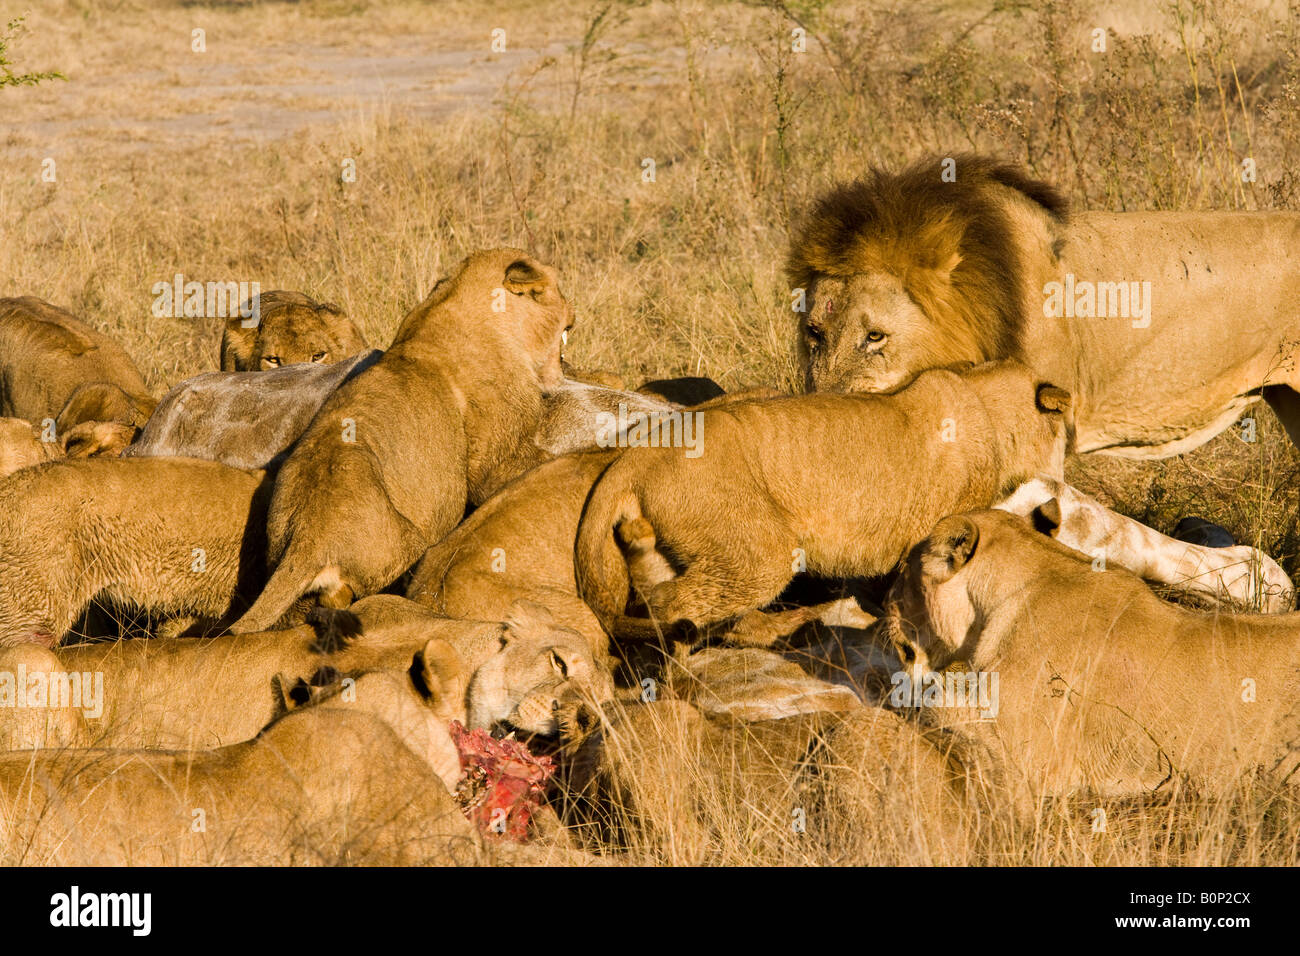 Close-up vue ouverte d'un grand groupe de Lions, hommes et femmes, se nourrissant de proies, une girafe récemment tuer en Delta de l'Okavango au Botswana Banque D'Images